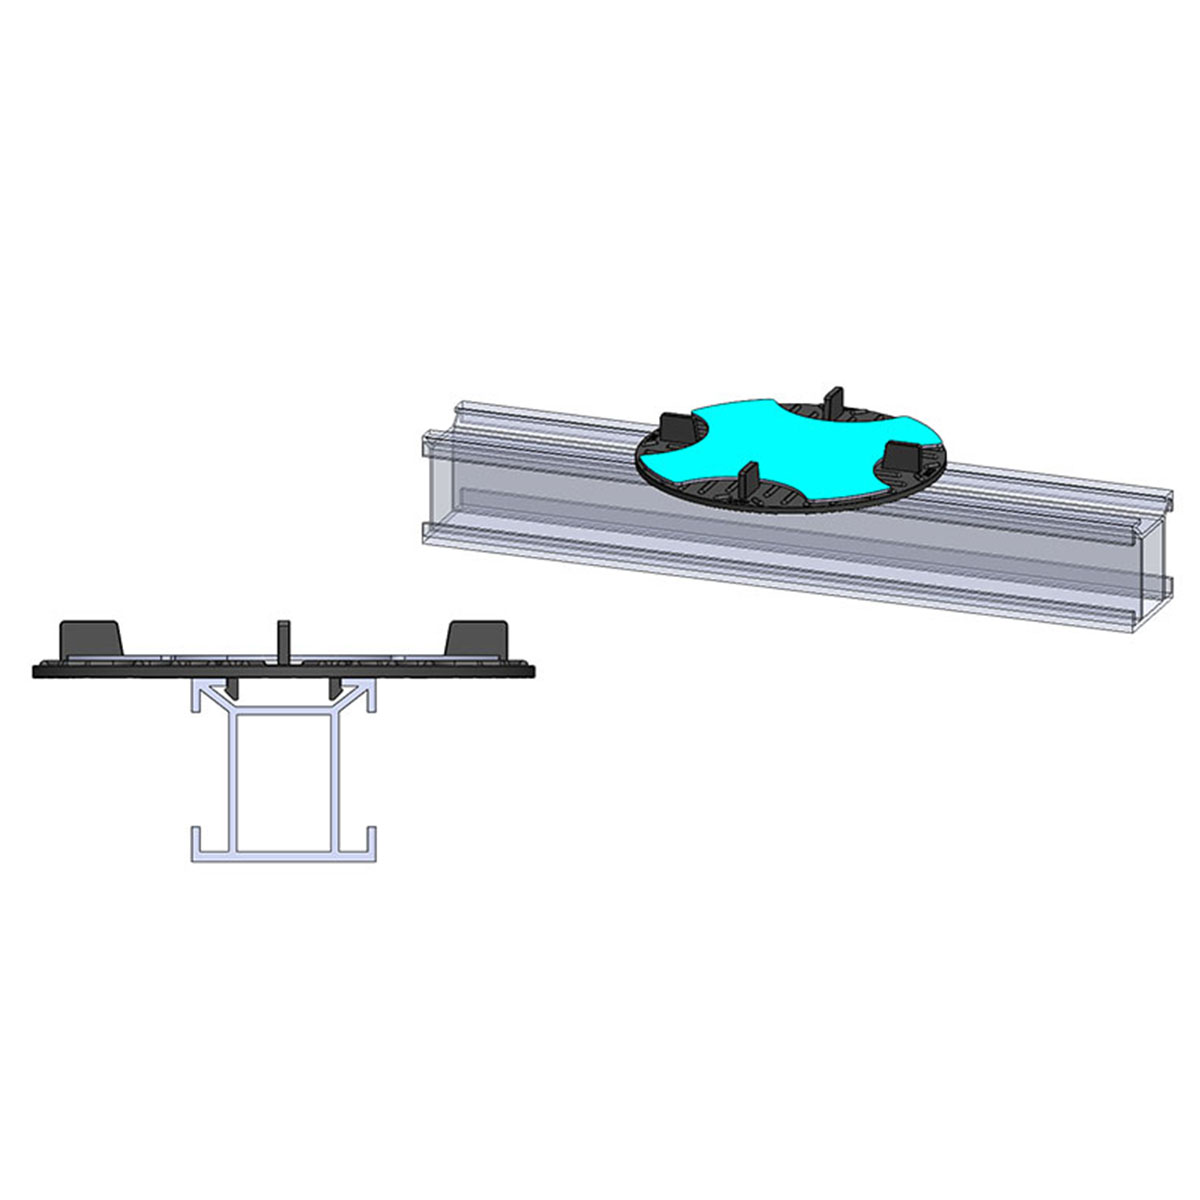 SOLIDOR Aufsatzmodul für QWICKBUILD Montageleisten inkl. Sticksol und mit 3 mm Fuge für Terrassenplatten